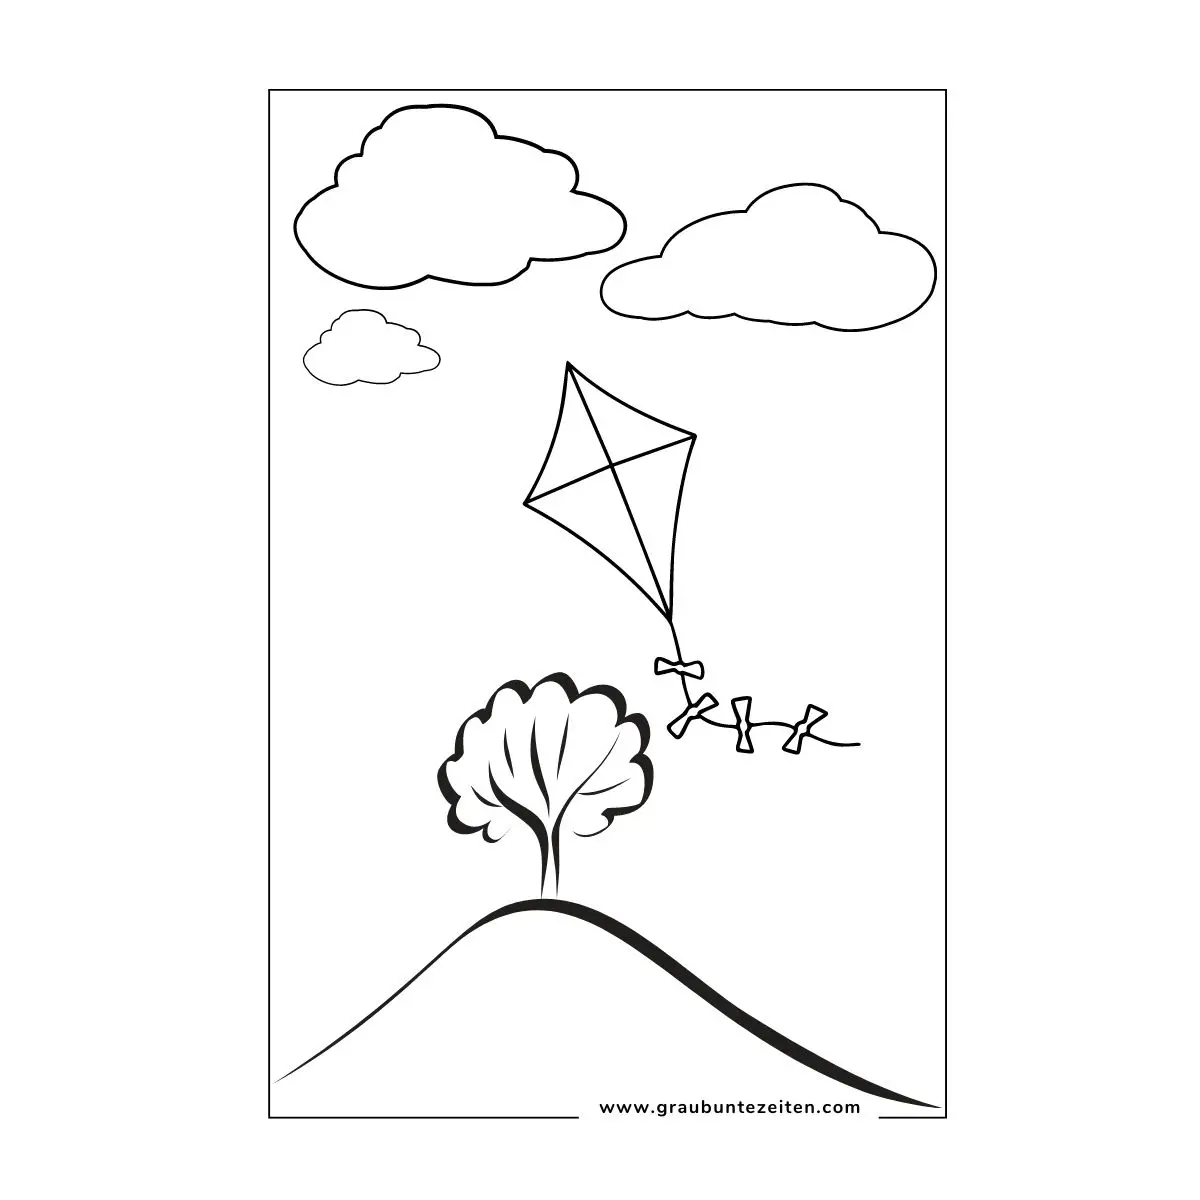 Ein Drachen zum Ausmalen schwebt über einem Baum vor Wolken.